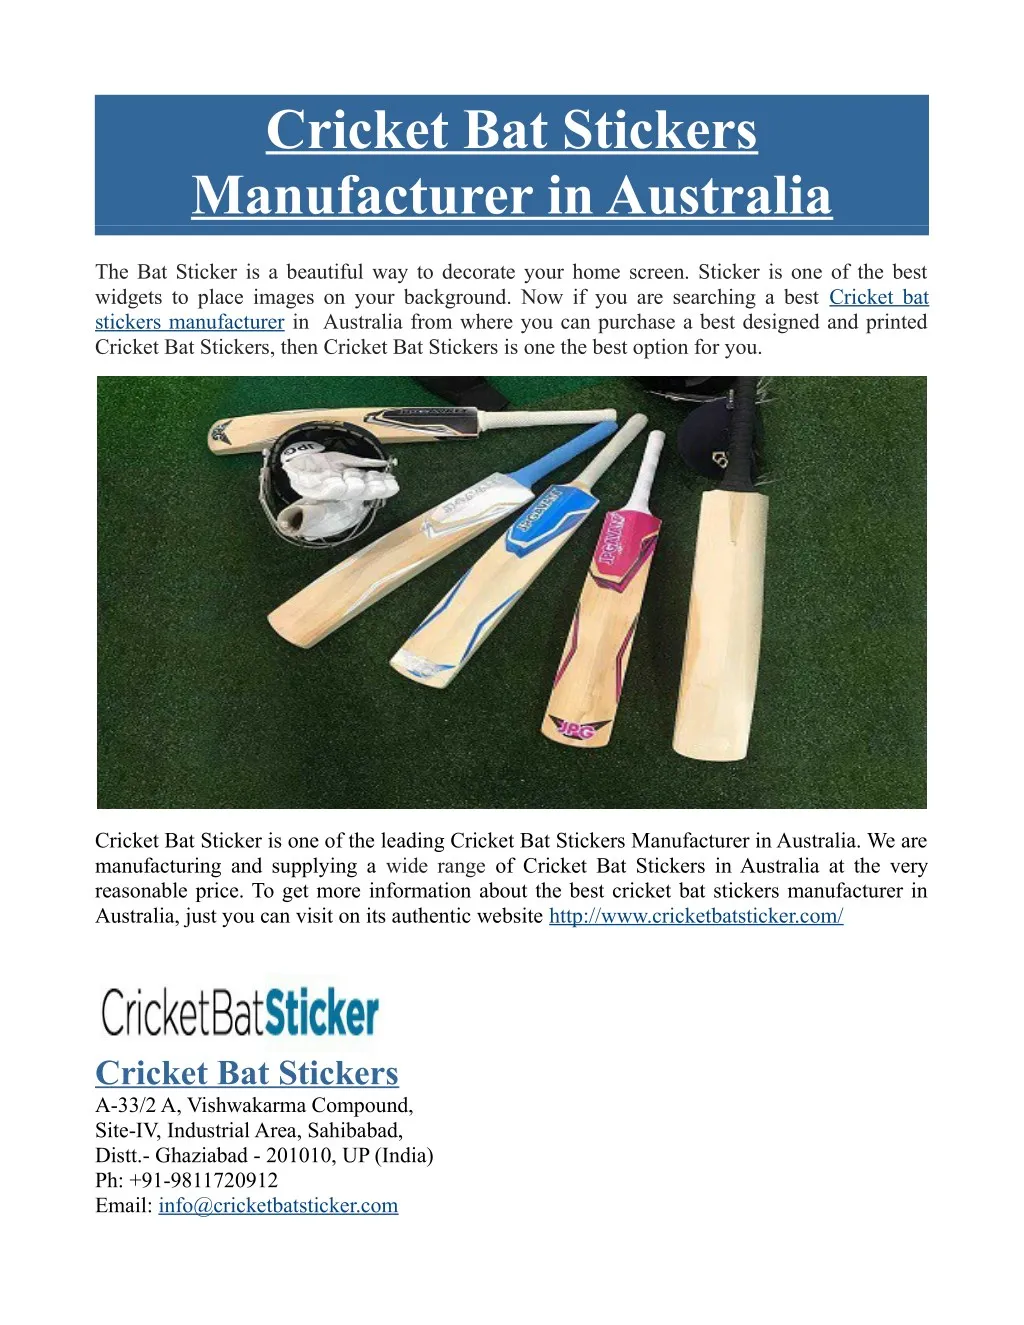 cricket bat stickers manufacturer in australia